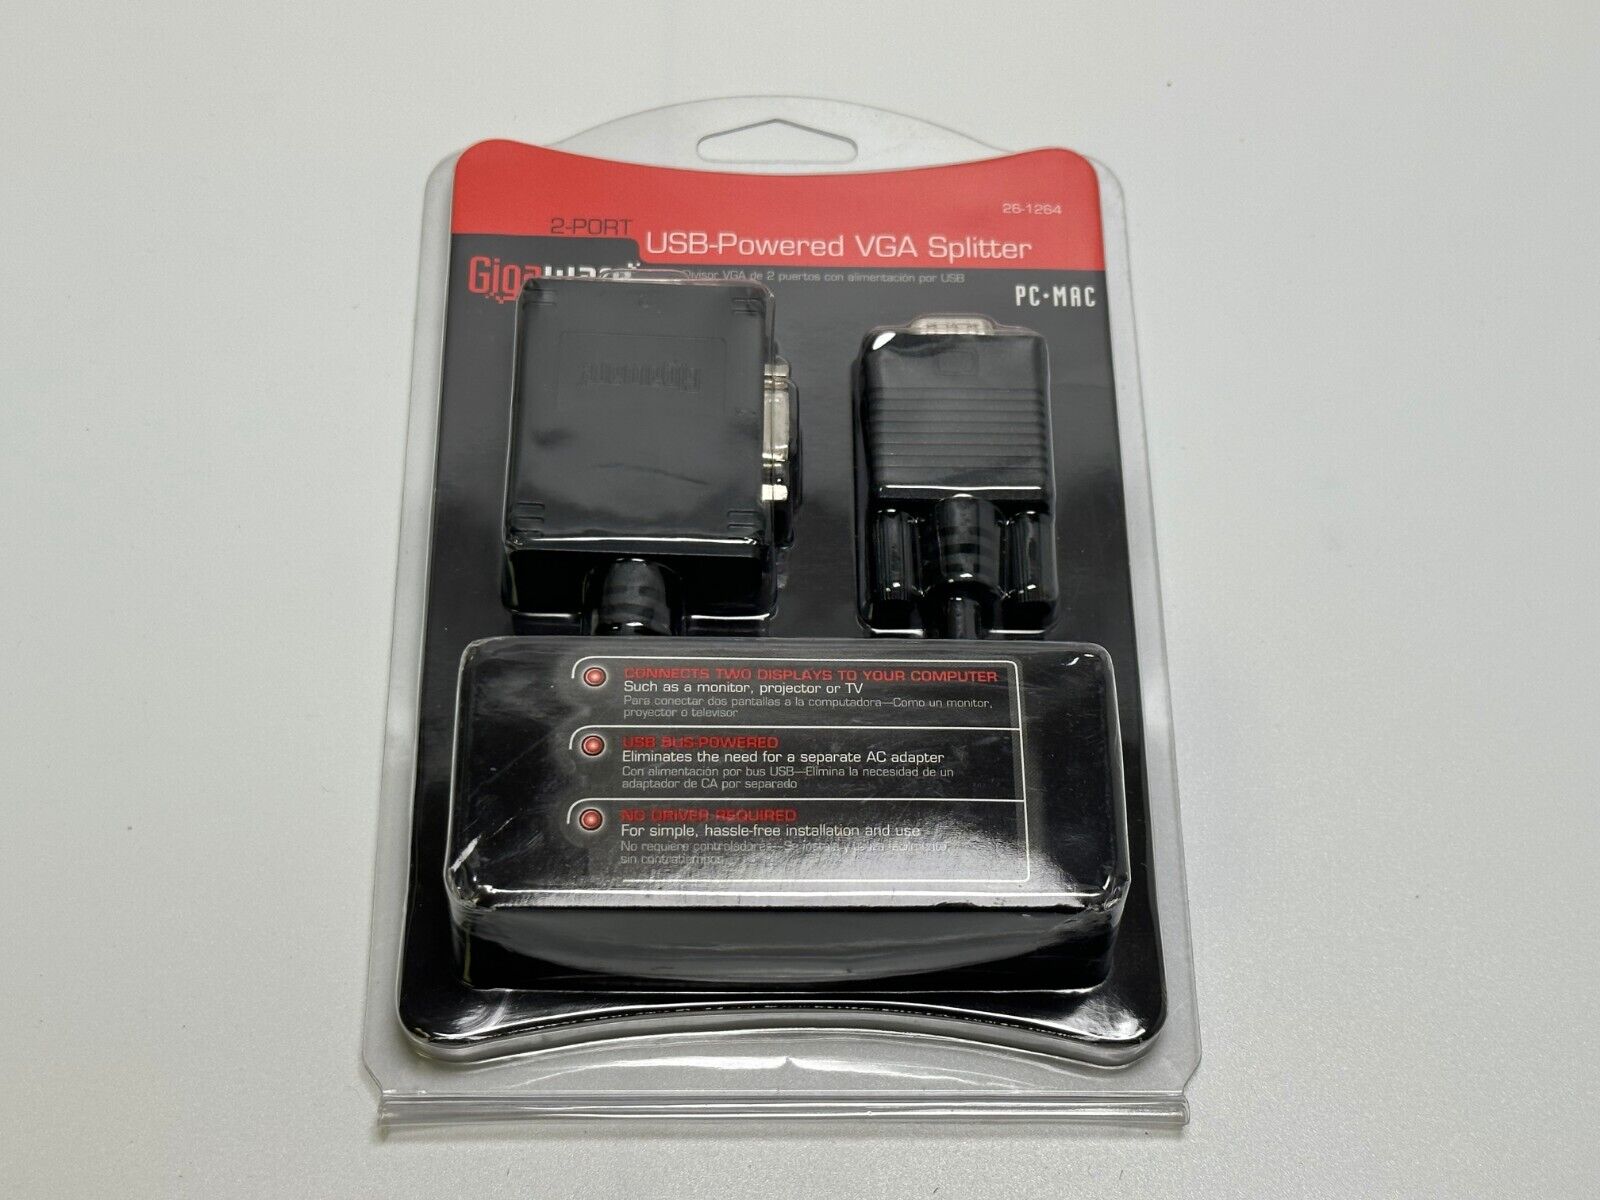 Gigaware 2-Port USB-Powered VGA Splitter 26-1264, 2601264